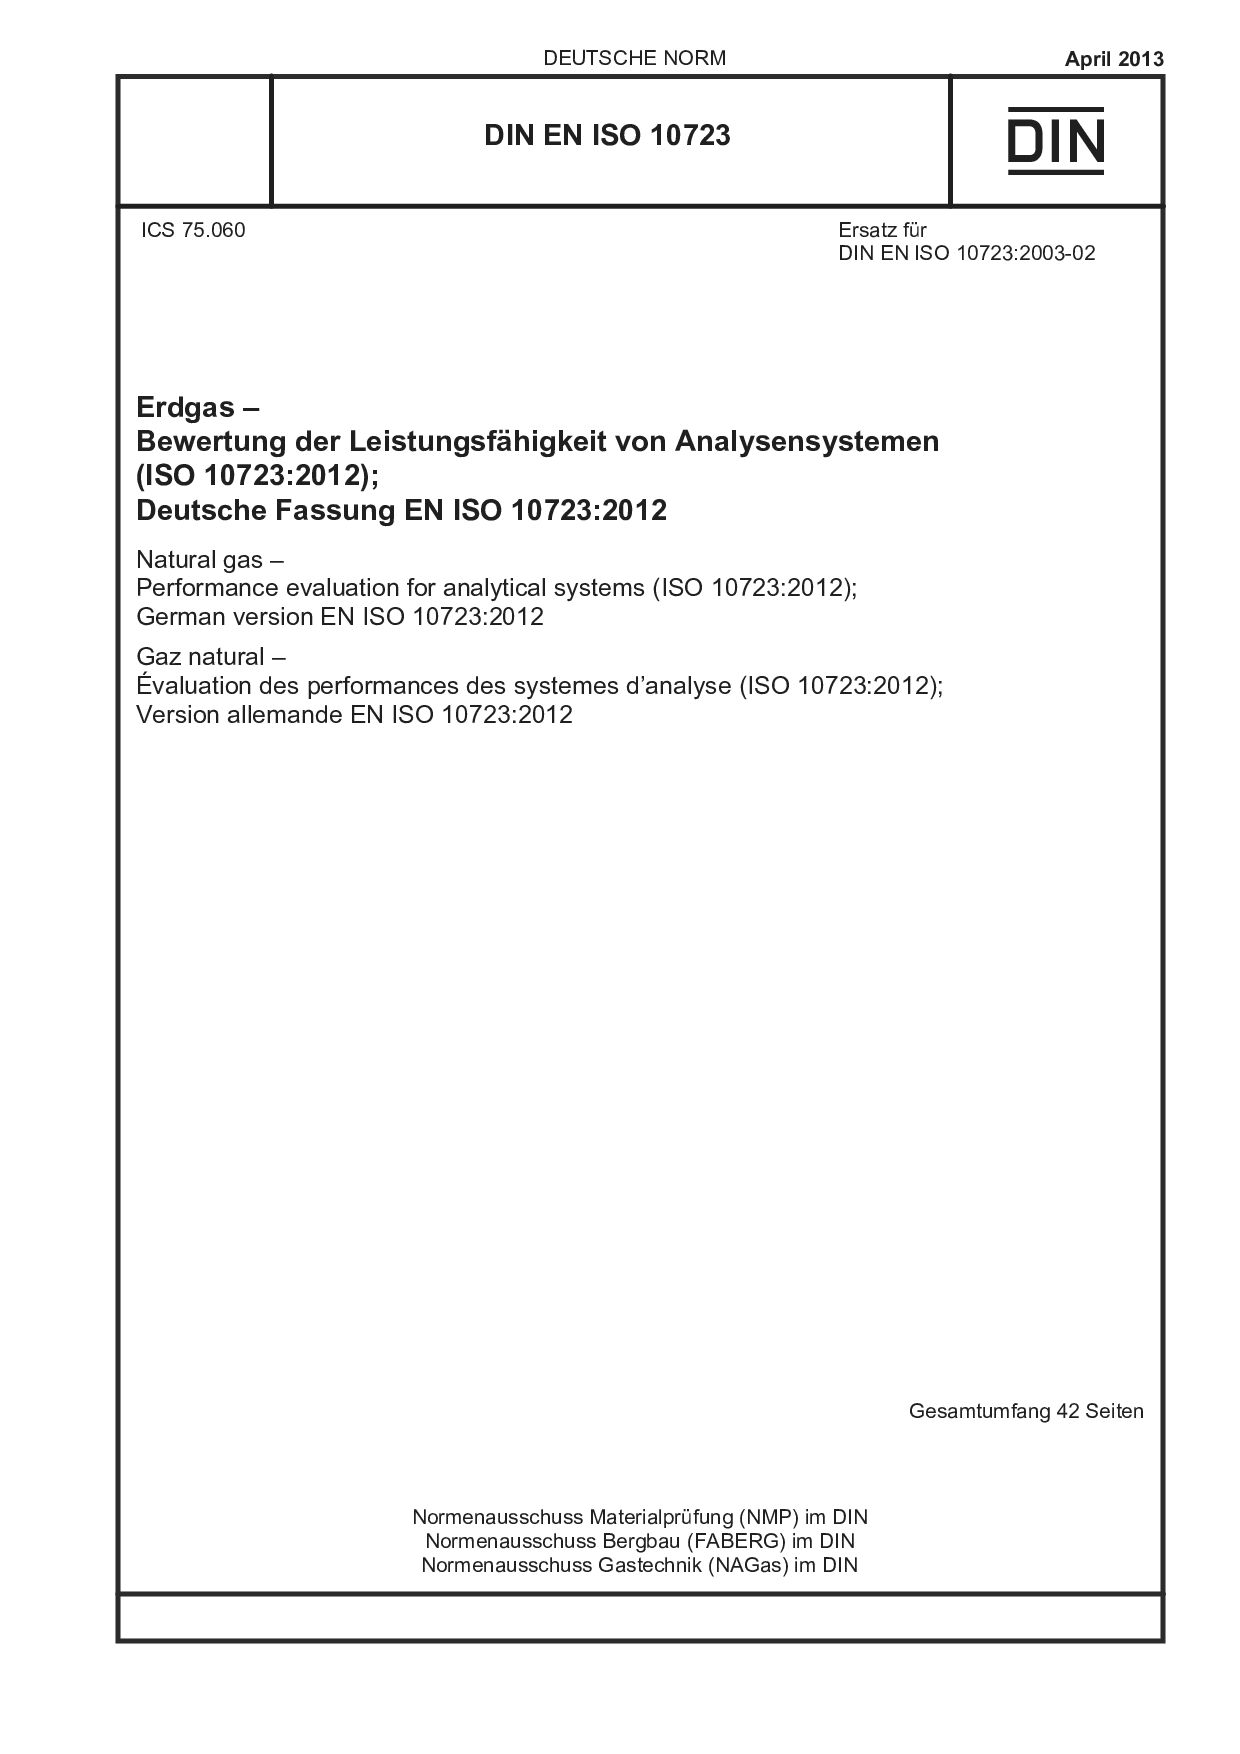 DIN EN ISO 10723:2013